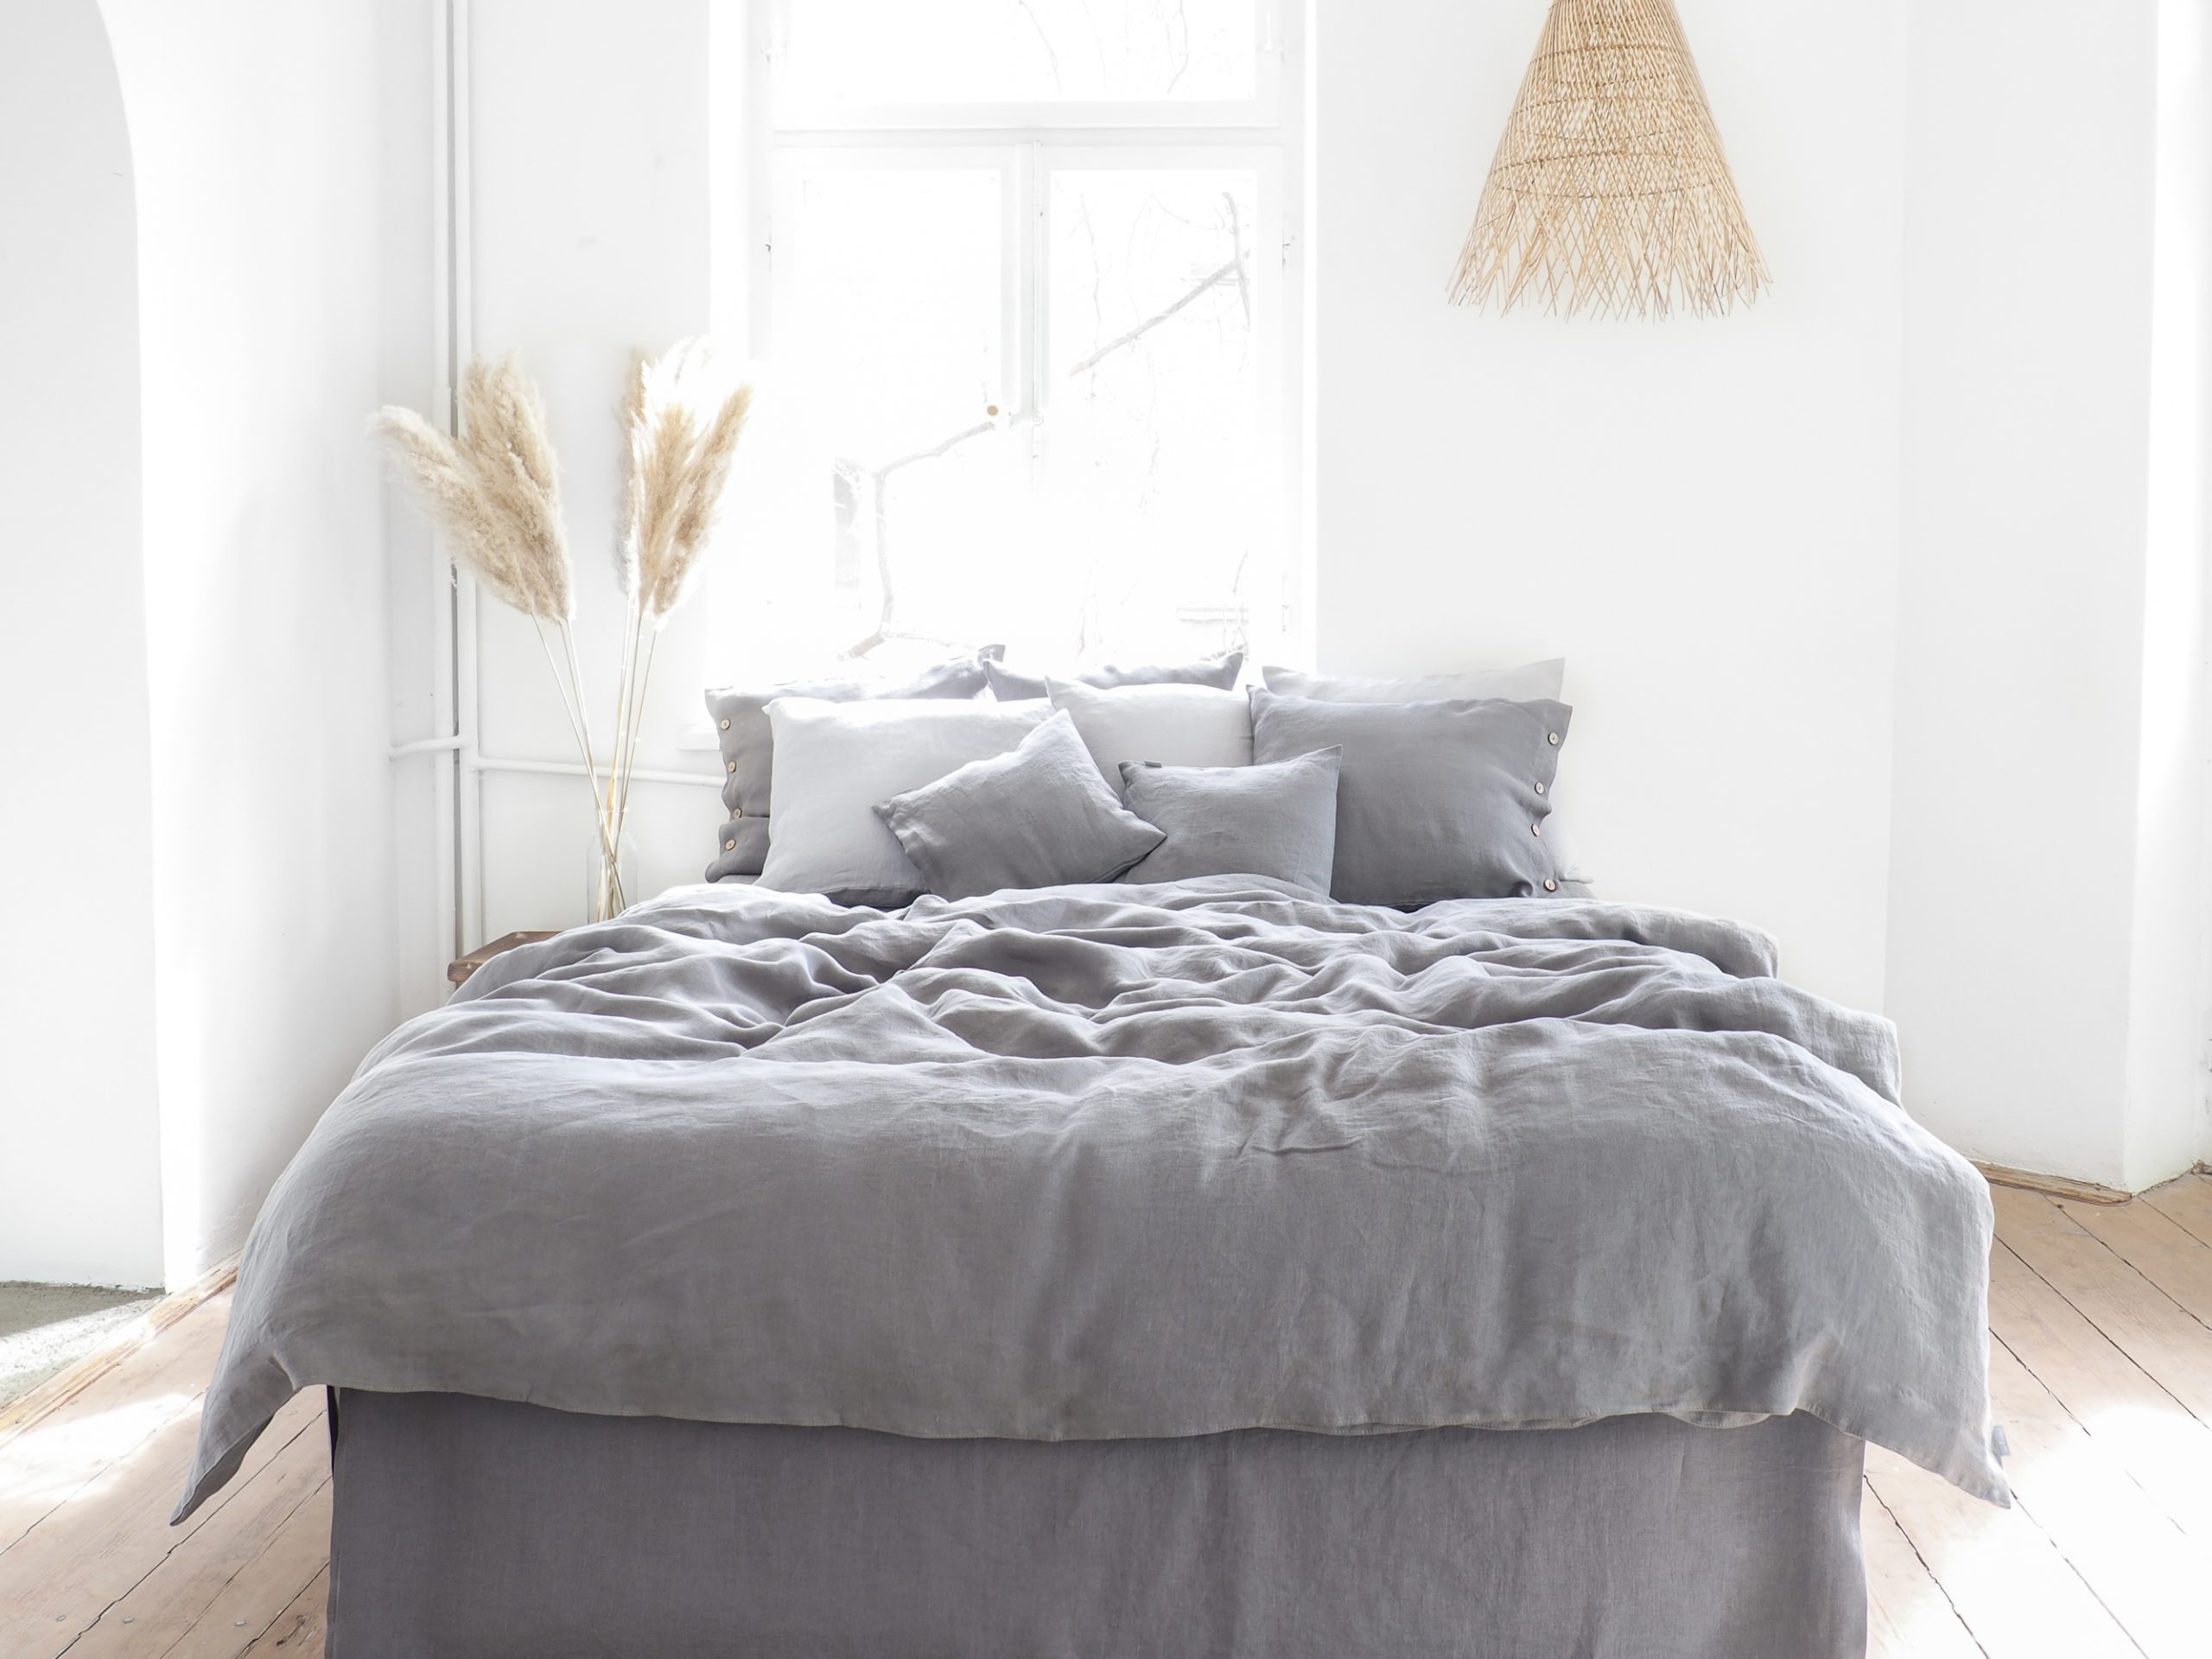 gray linen bedding with a zipper